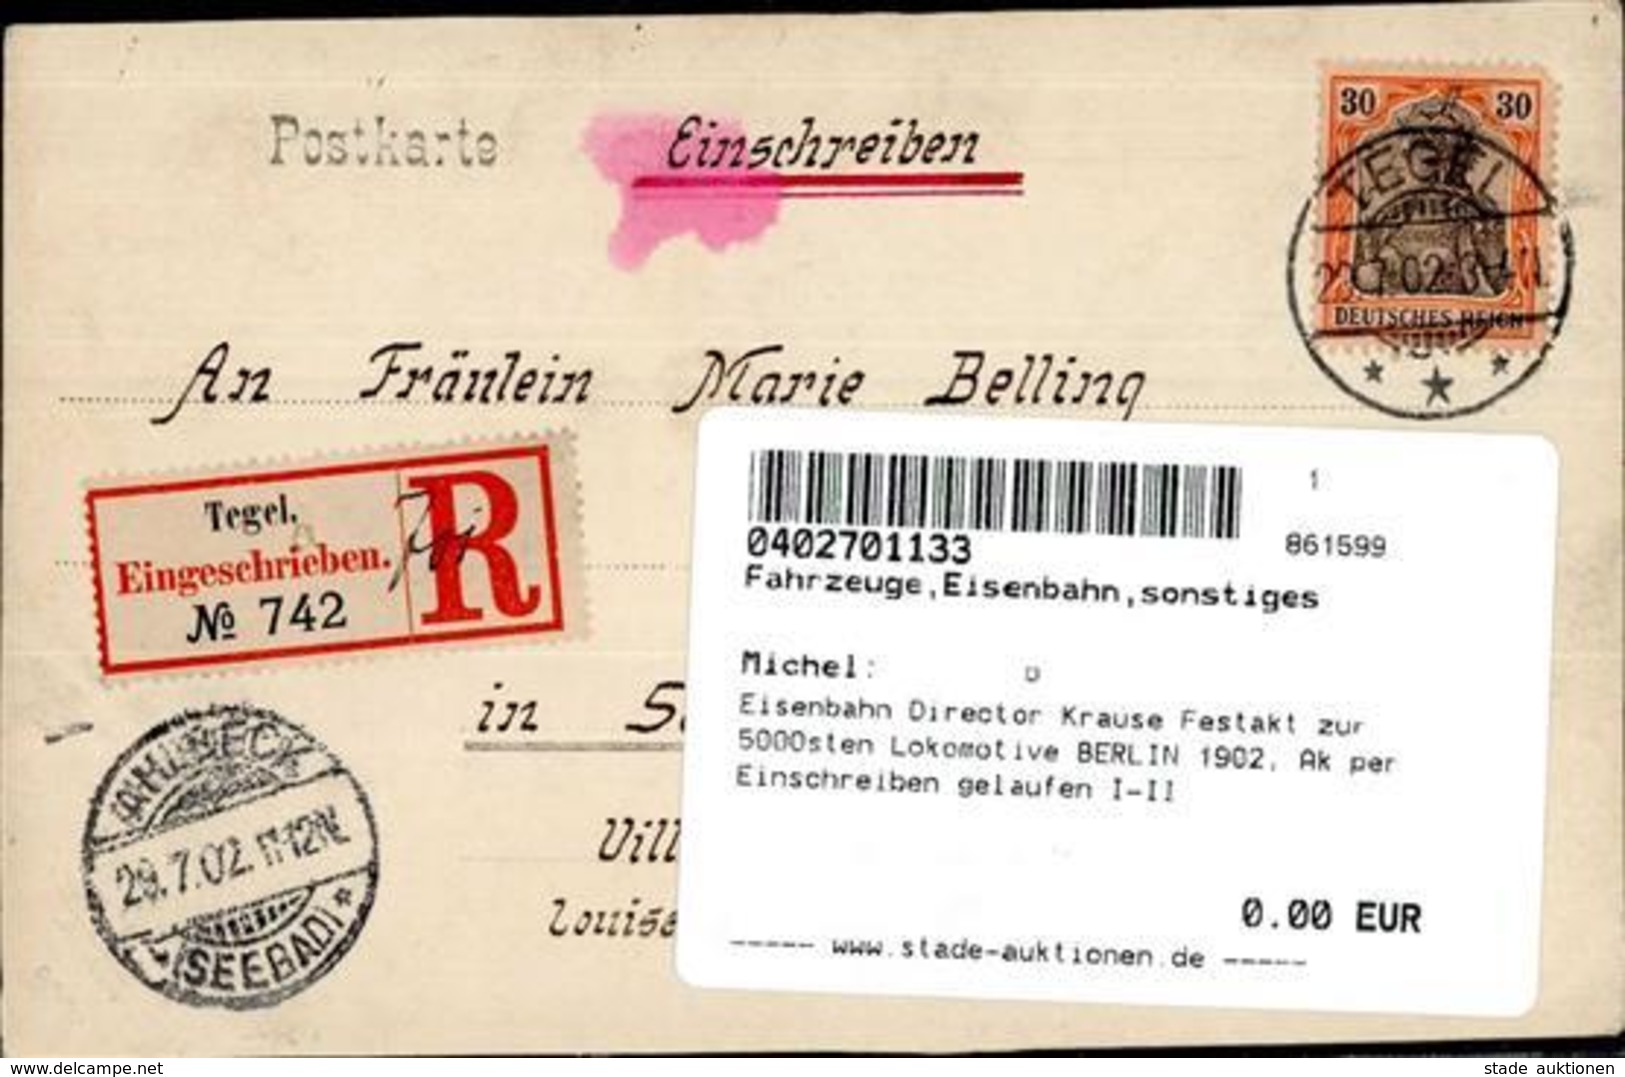 Eisenbahn Director Krause Festakt Zur 5000sten Lokomotive BERLIN 1902, Ak Per Einschreiben Gelaufen I-II Chemin De Fer - Eisenbahnen